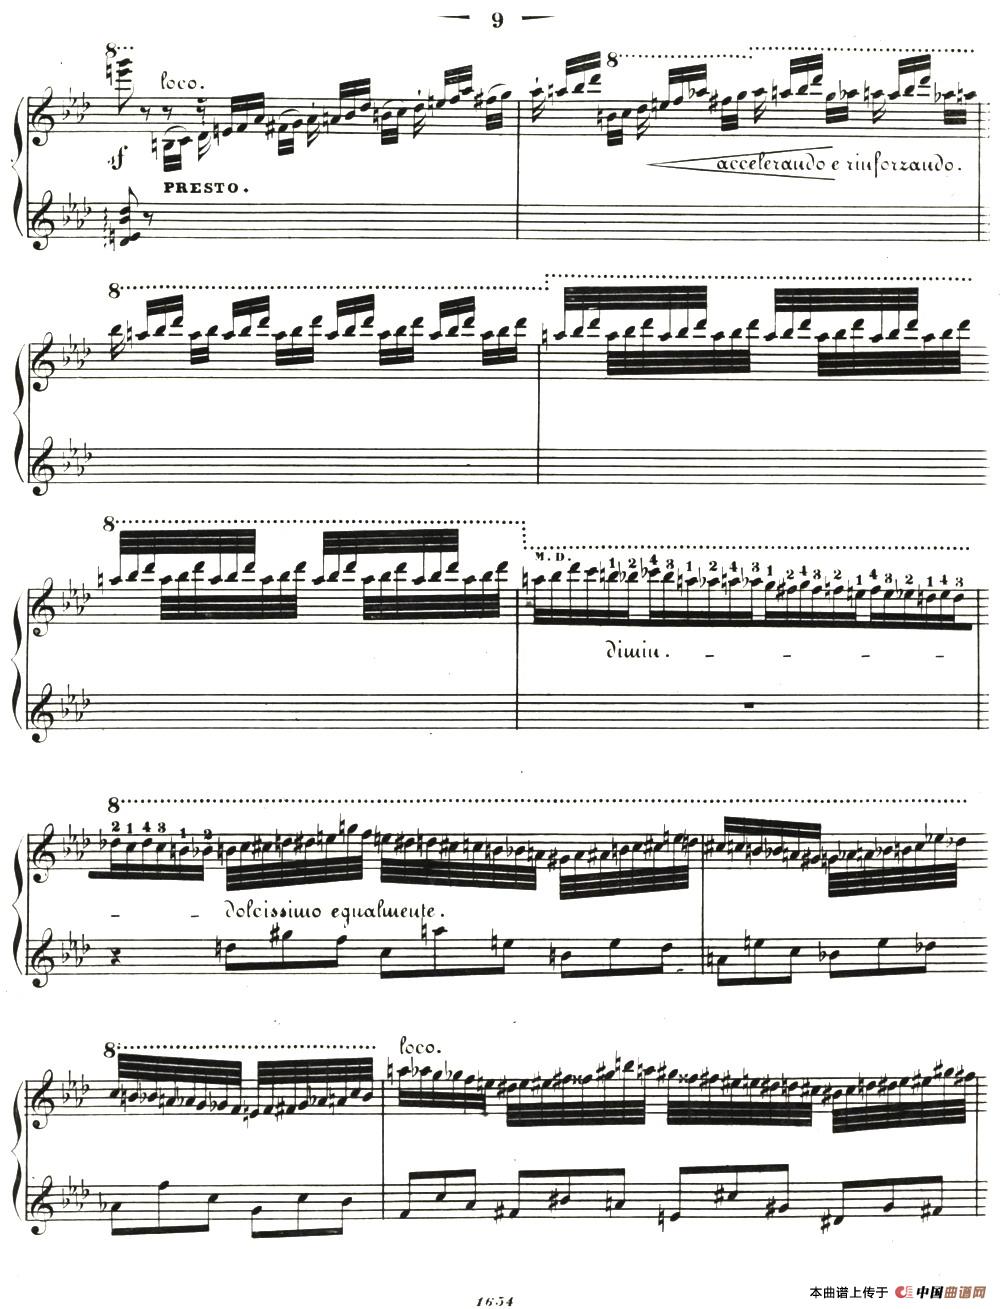 李斯特音乐会练习曲 S144（2 轻盈 f小调 S144 La leggierezza F minor）(1)_020.jpg